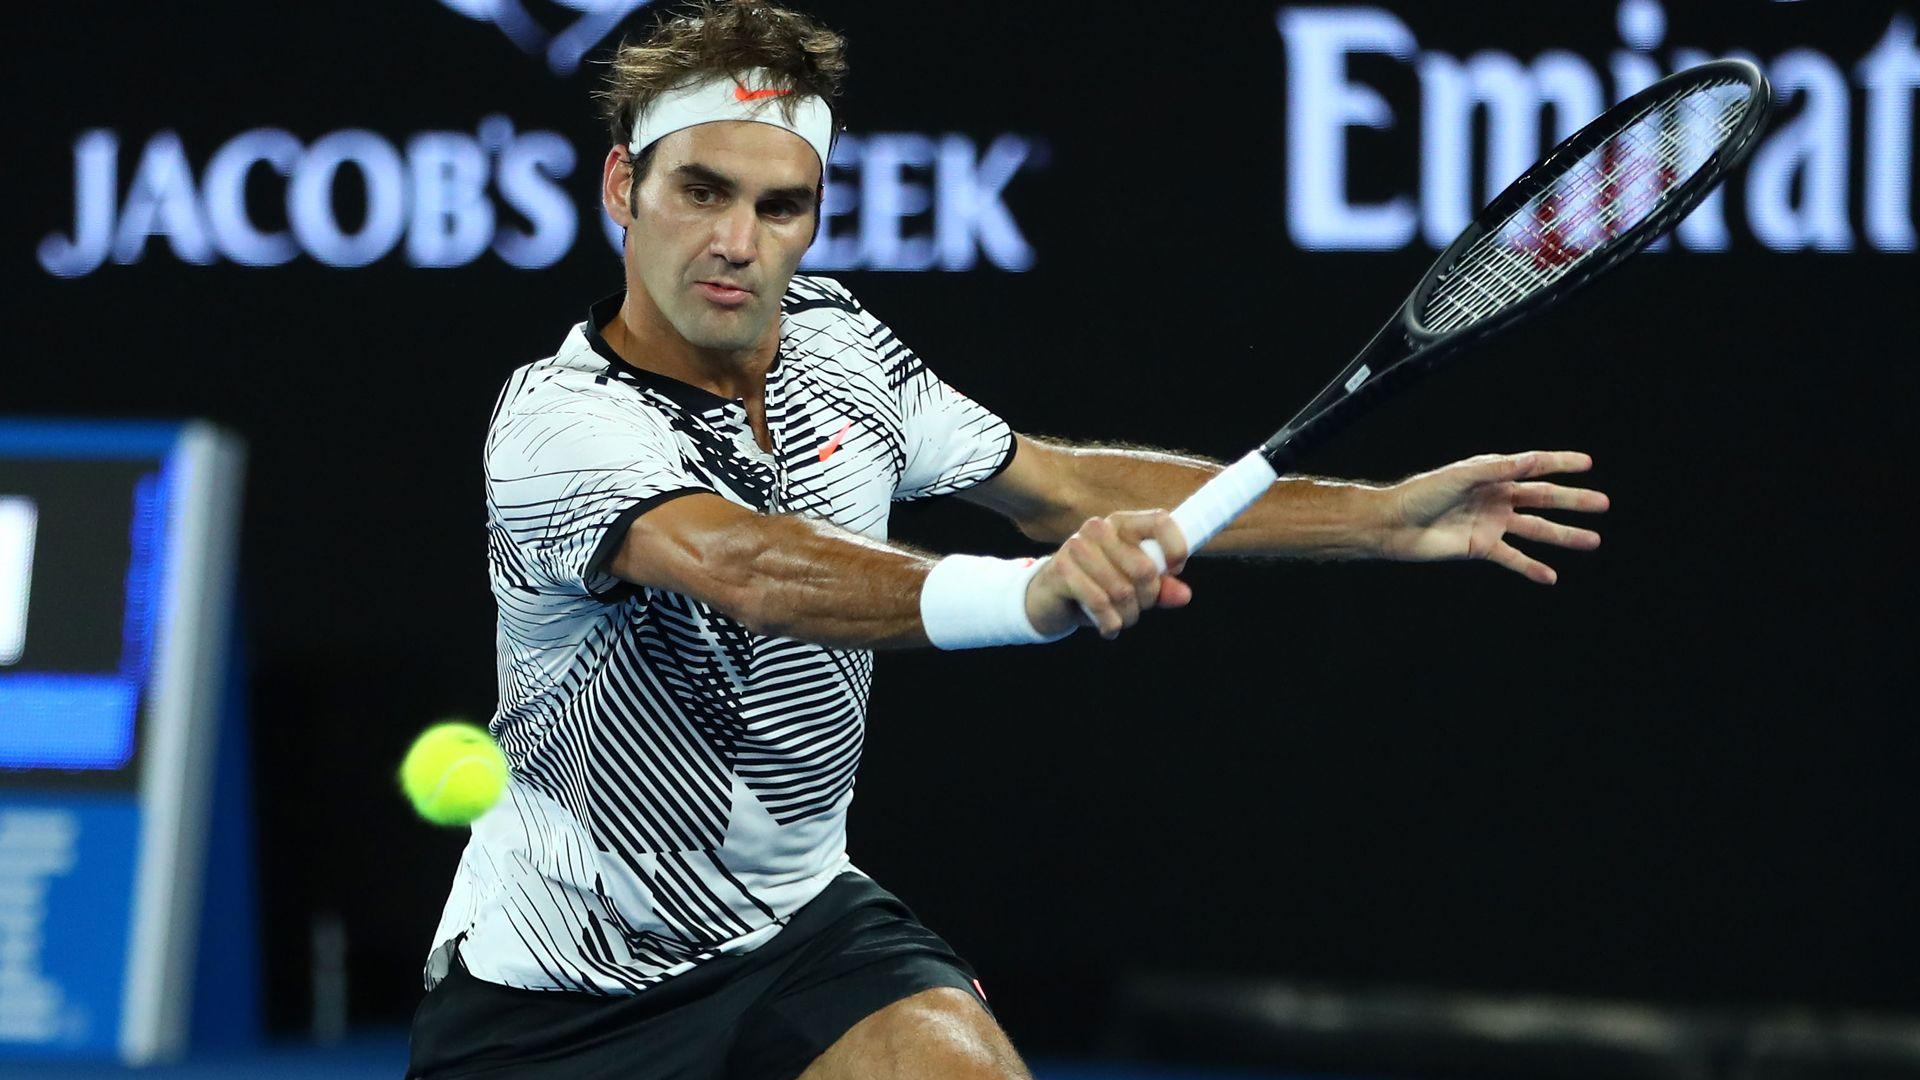 Federer Survives Wawrinka Comeback; Eyes 18th Major Crown. ATP